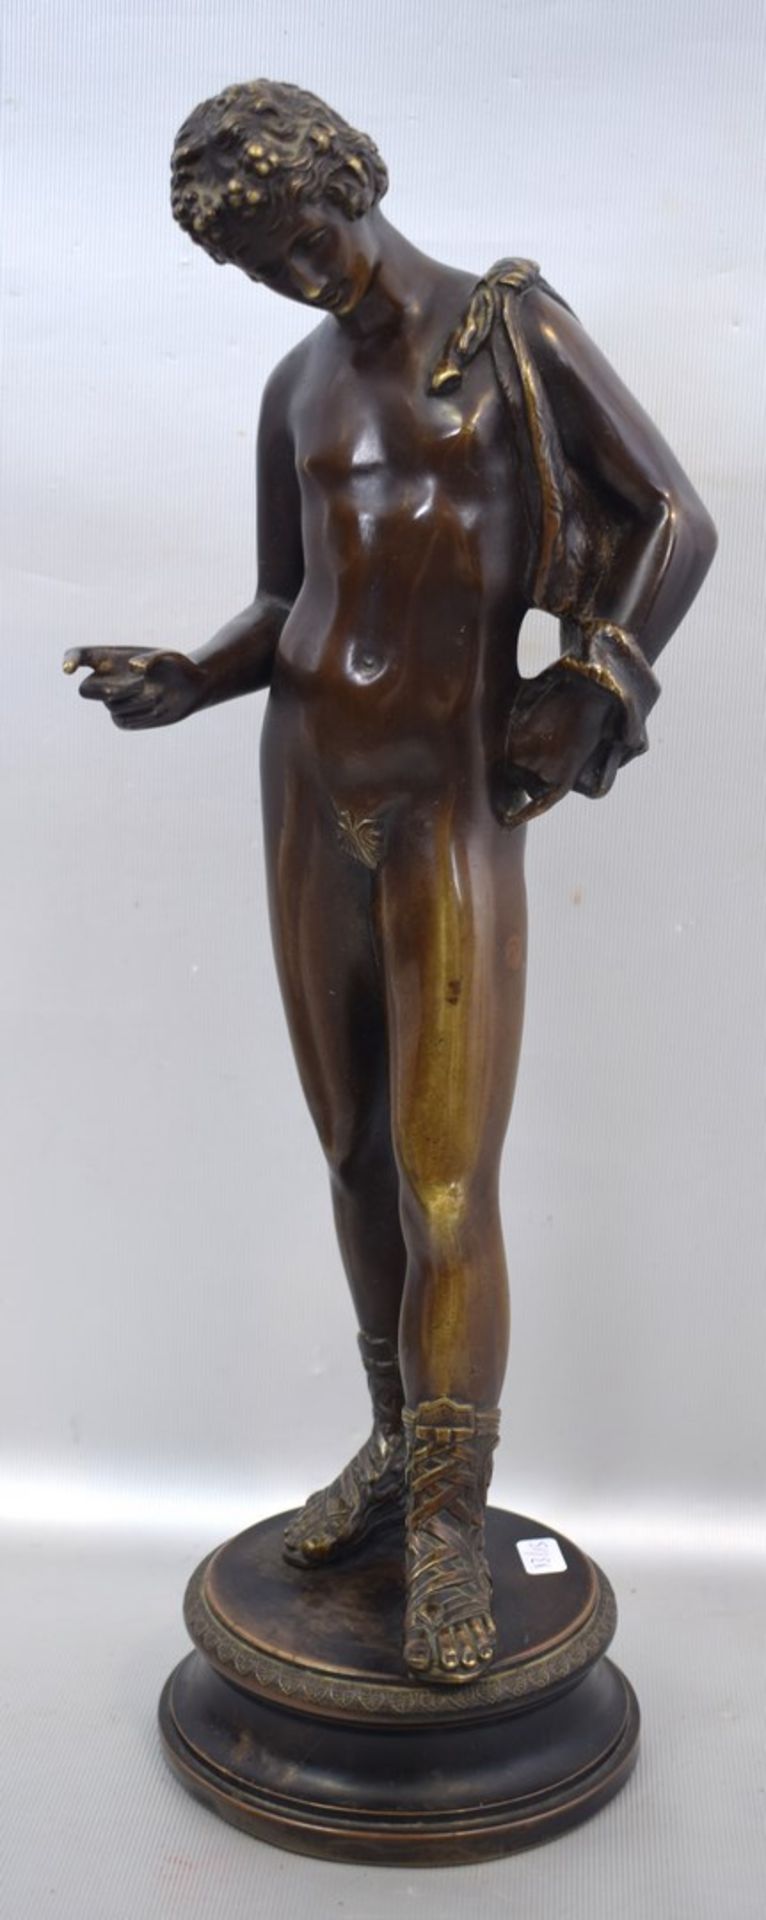 Darstellung des Dionysos mit Ziegenfellauf rundem Sockel stehend, Bronze, patiniert, H 39 cm, um